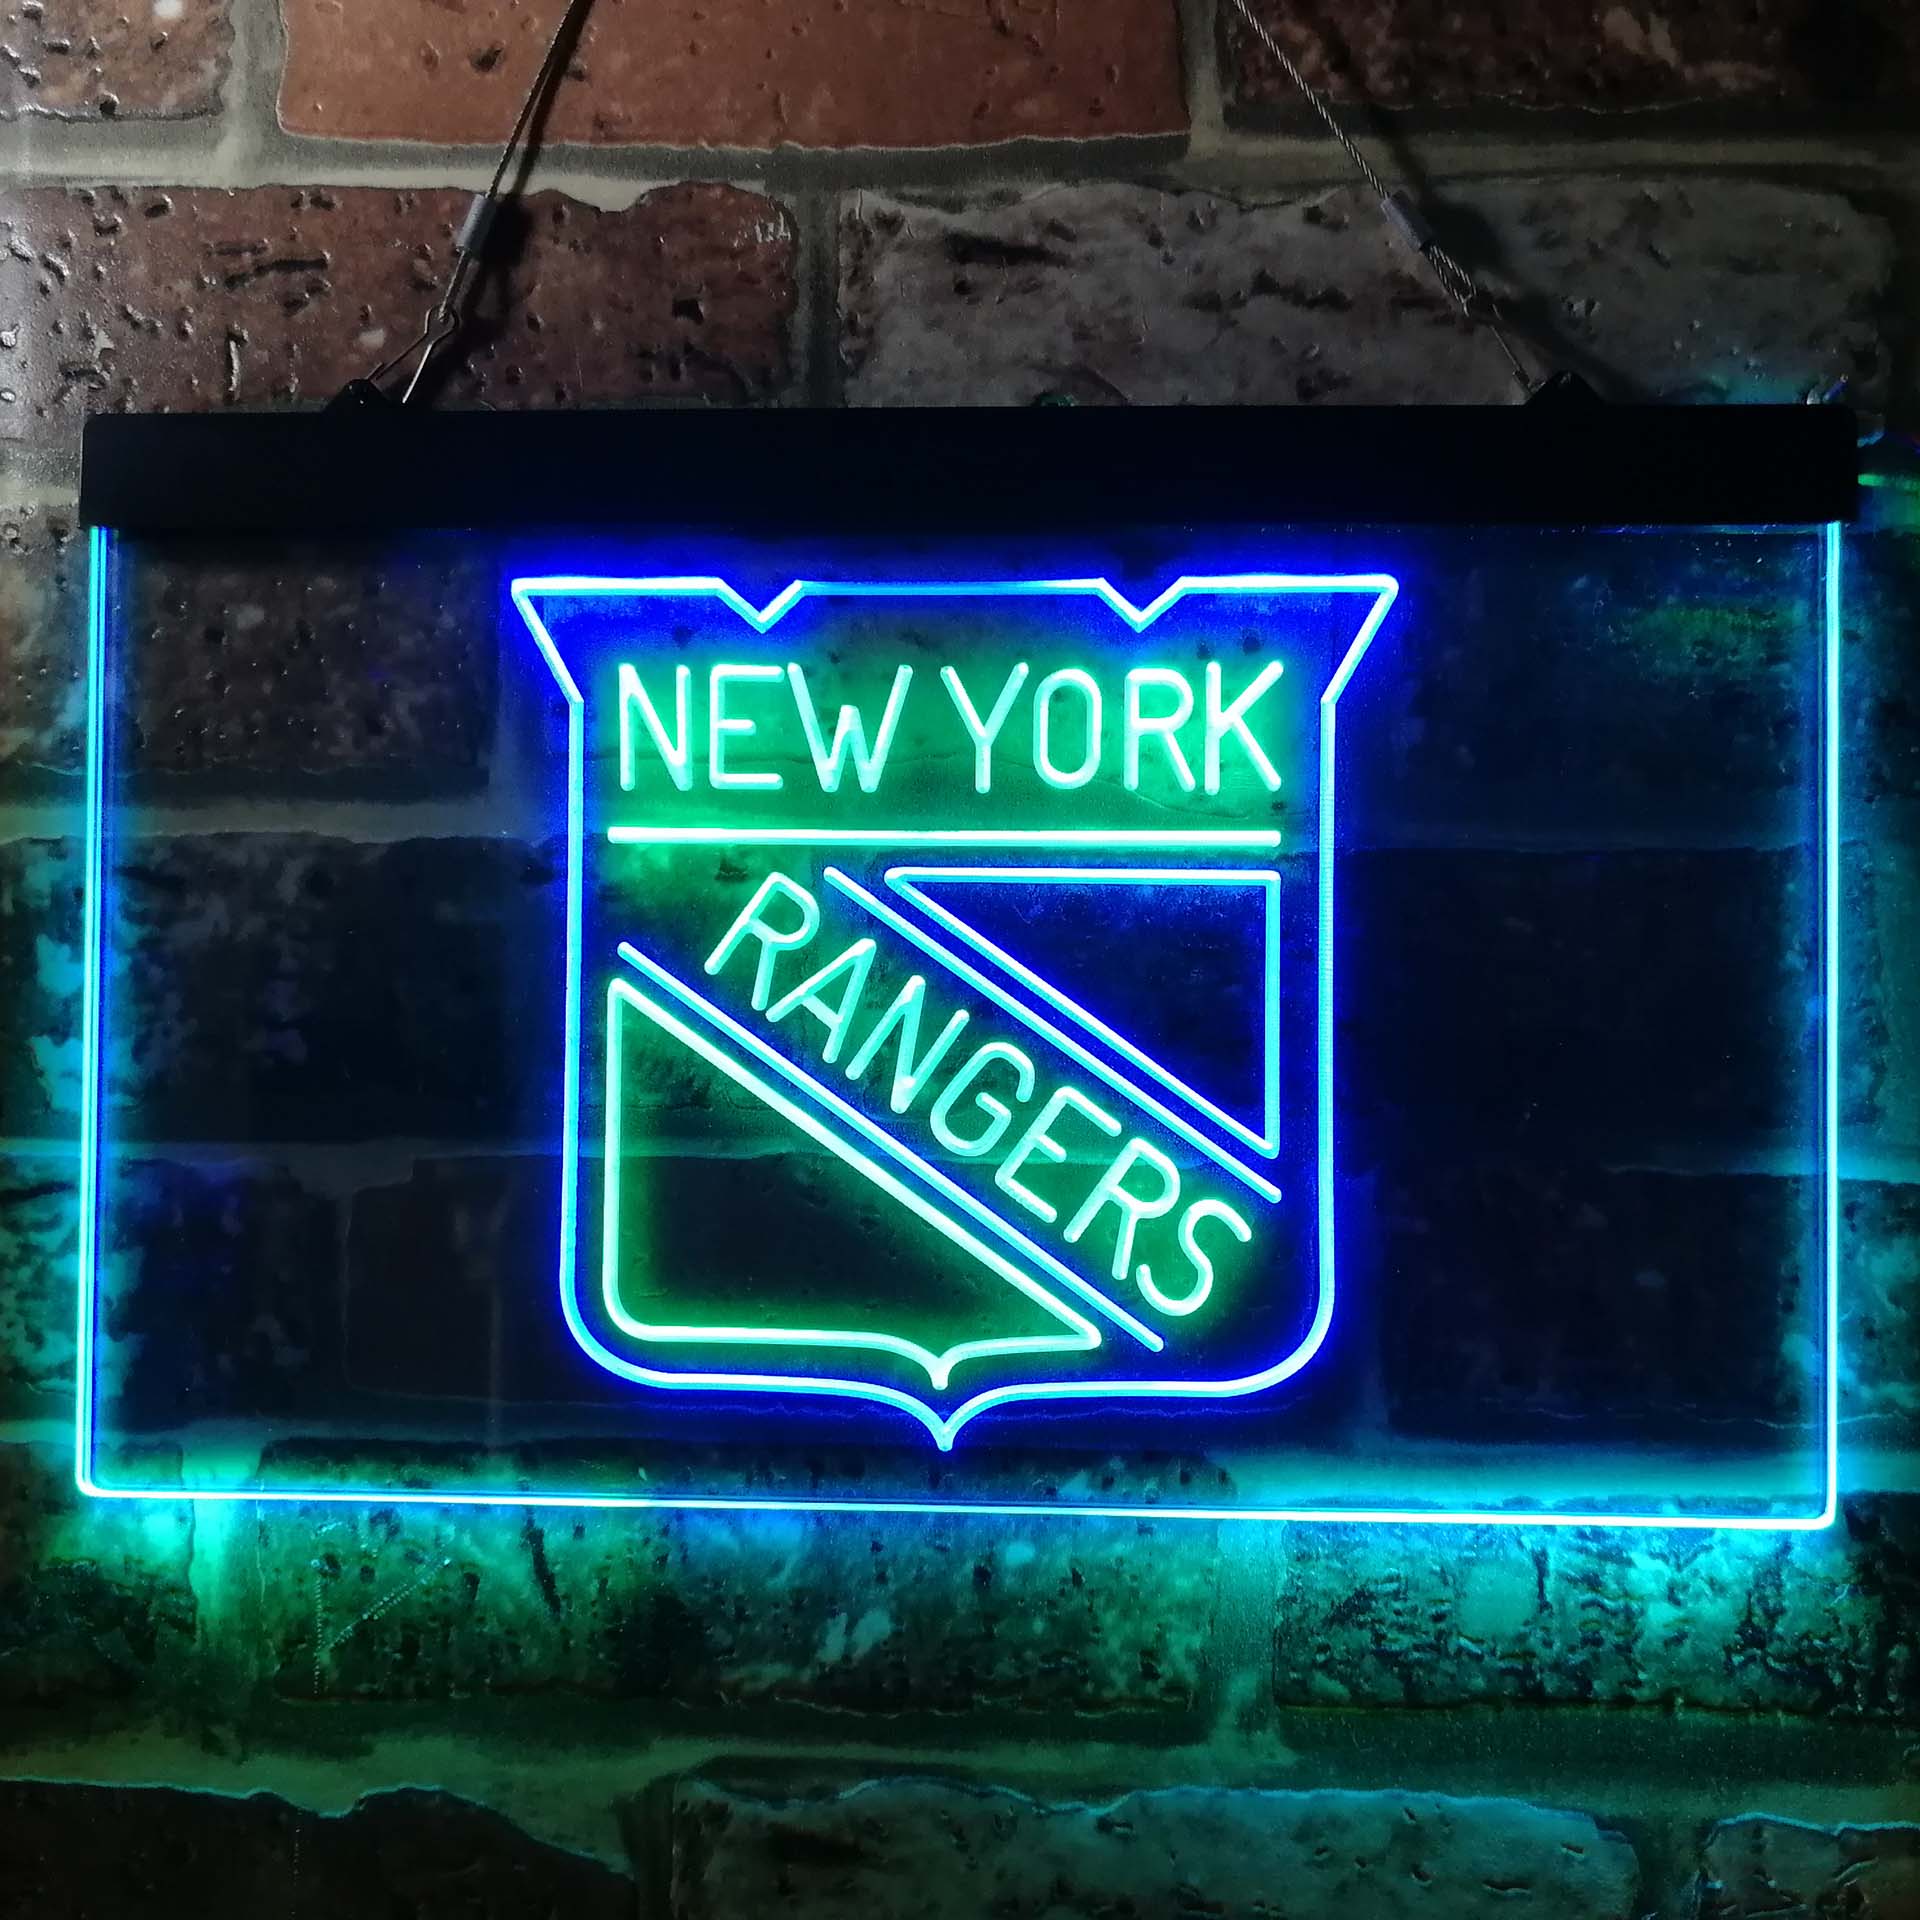 New York Rangers Neon-Like LED Sign